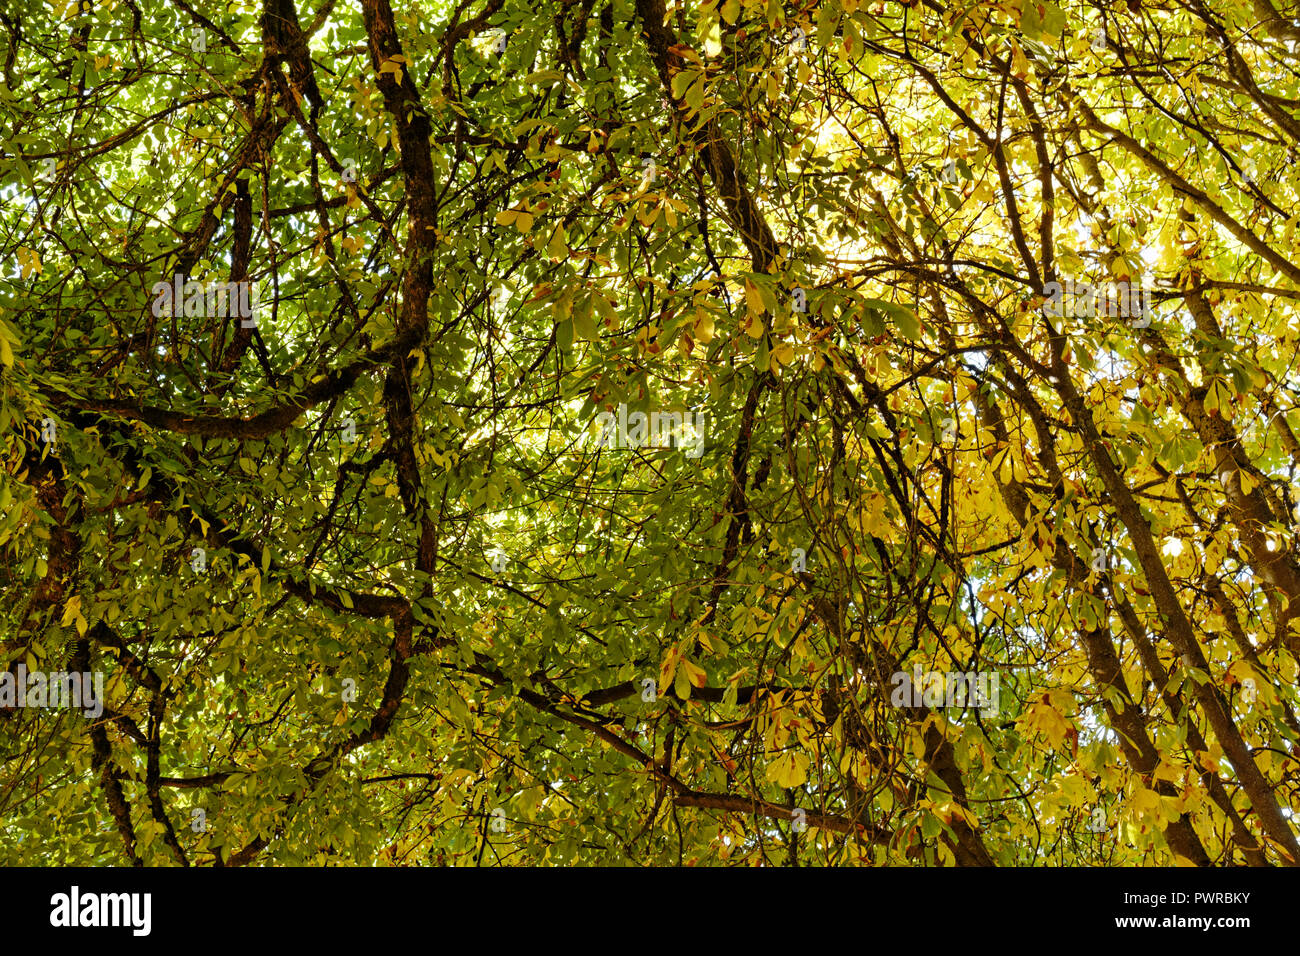 Vista dal basso del rami aggrovigliati e caduta delle foglie della coppia di alberi decidui Foto Stock